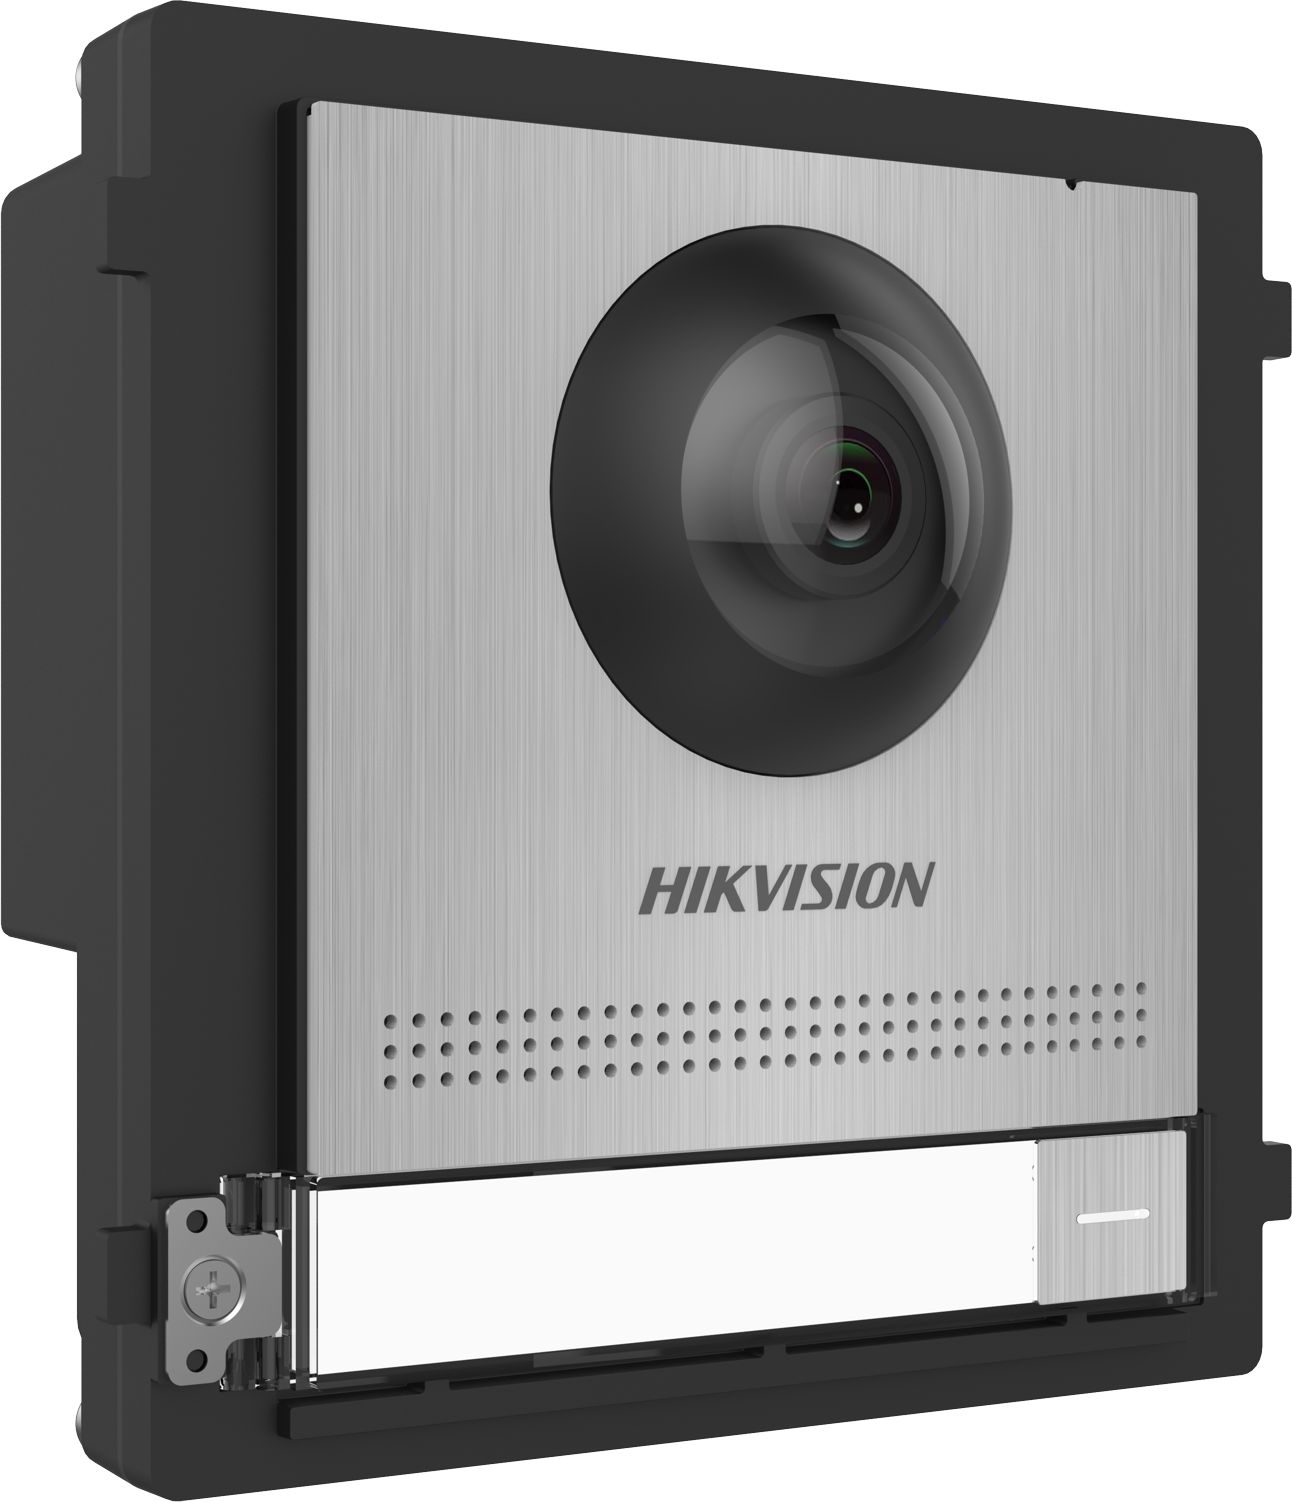 Panou.videointerfon modular de exterior Hikvision DS-KD8003-IME1/S; 1 xbuton apelare, camera video wide angle 180° Fish eye 2MP; permite conectarea pana la 8 submodule de extensie, conectare: TCP/IP, RTSP; customizare afisare nume; montaj aplicat sau ingropat (accesoriile demontaj nu sunt incluse)_2